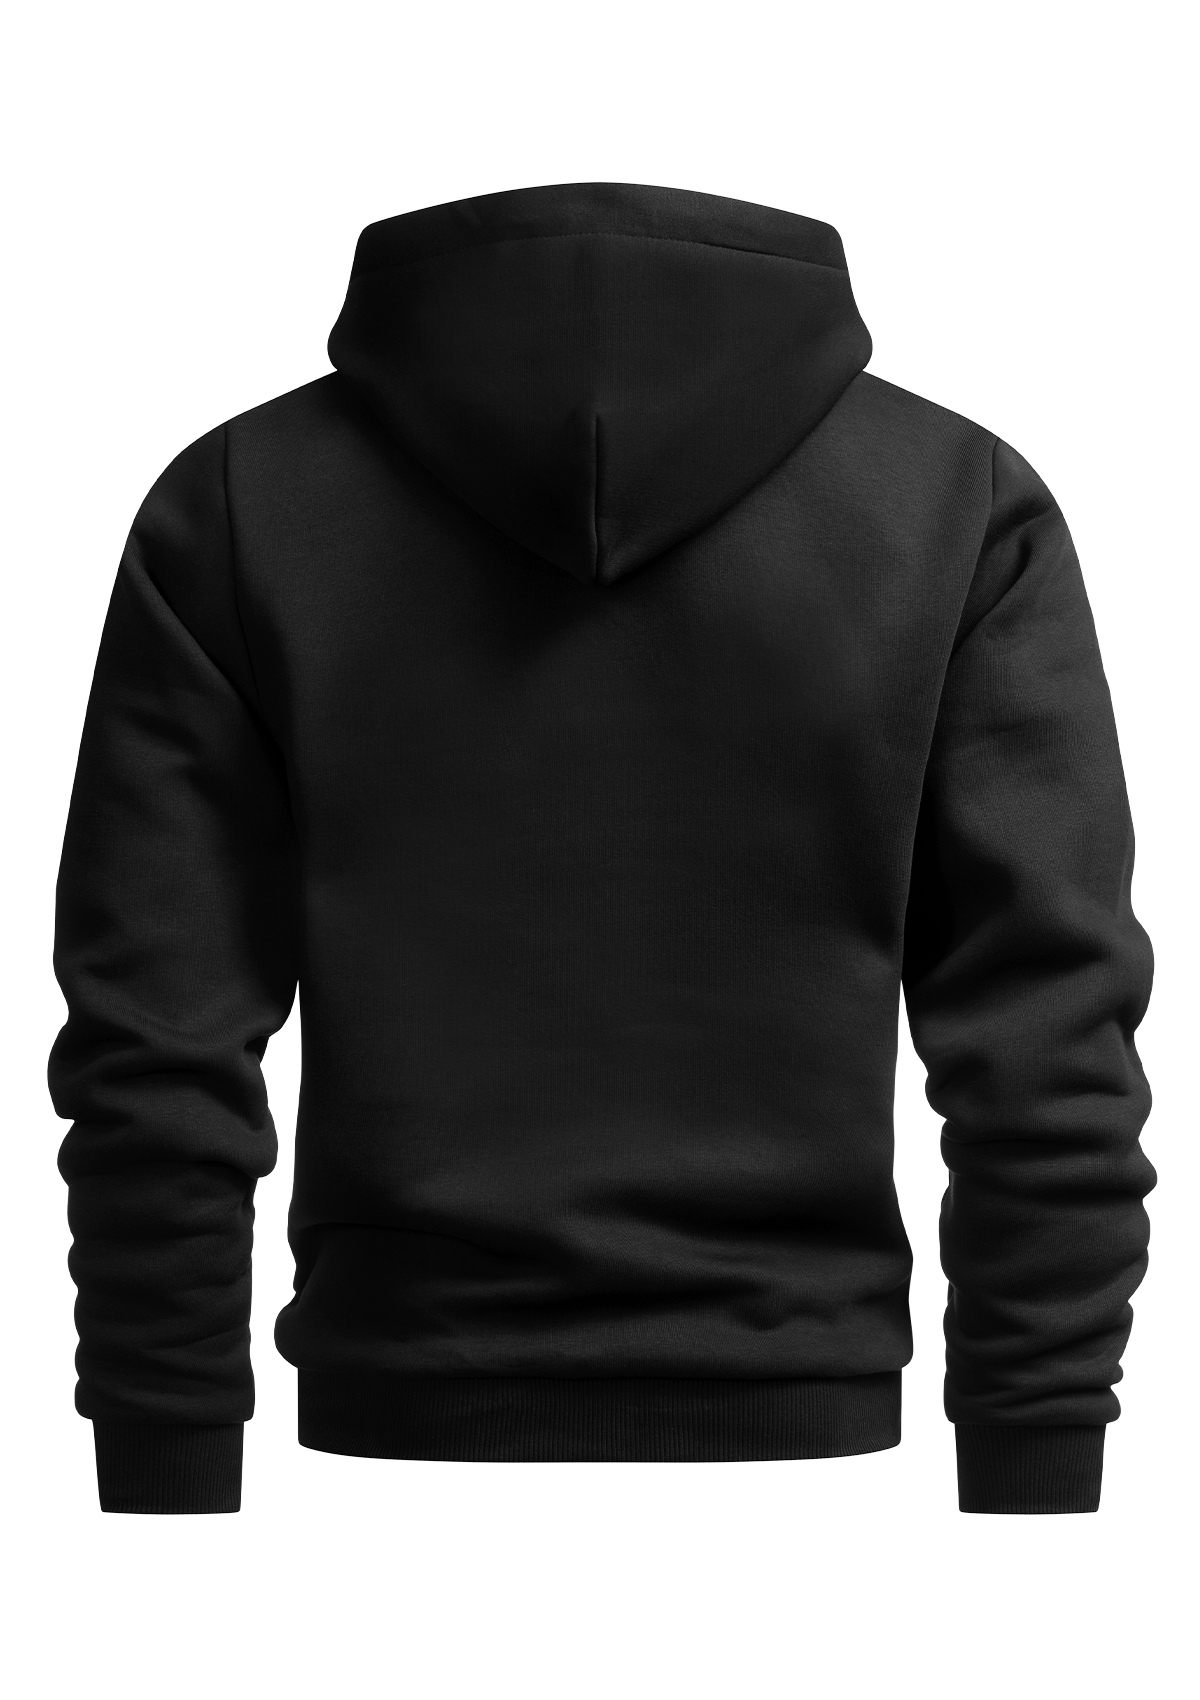 Hoody Jacket Original Black